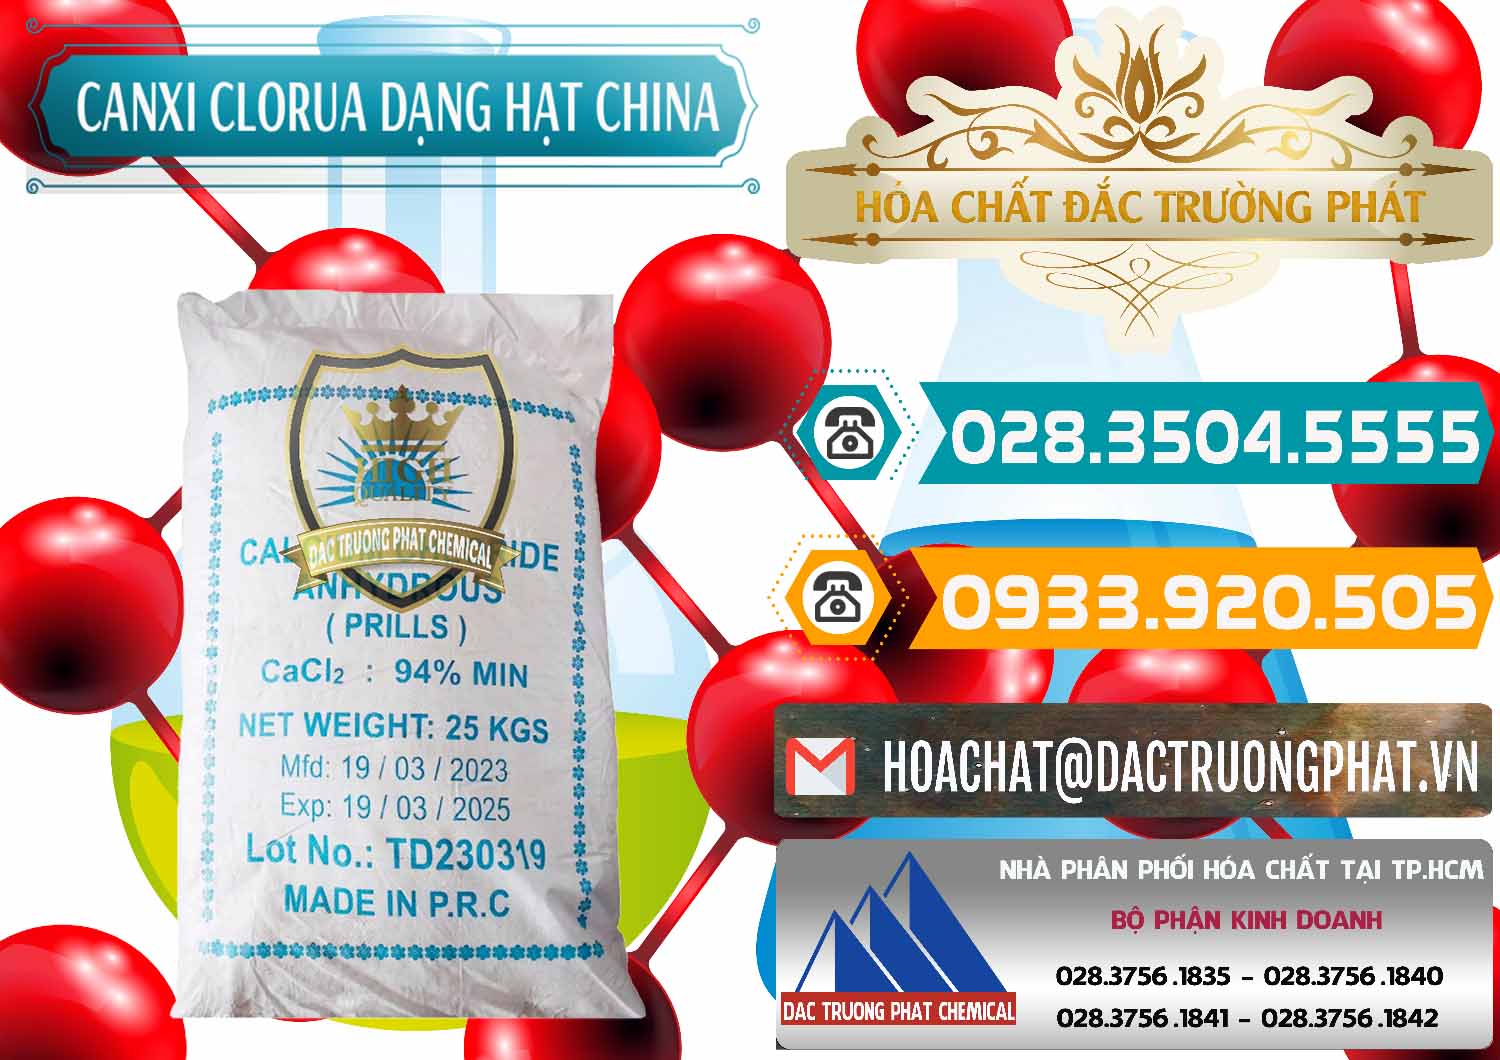 Đơn vị chuyên bán - cung ứng CaCl2 – Canxi Clorua 94% Dạng Hạt Trung Quốc China - 0373 - Chuyên bán và cung cấp hóa chất tại TP.HCM - congtyhoachat.vn